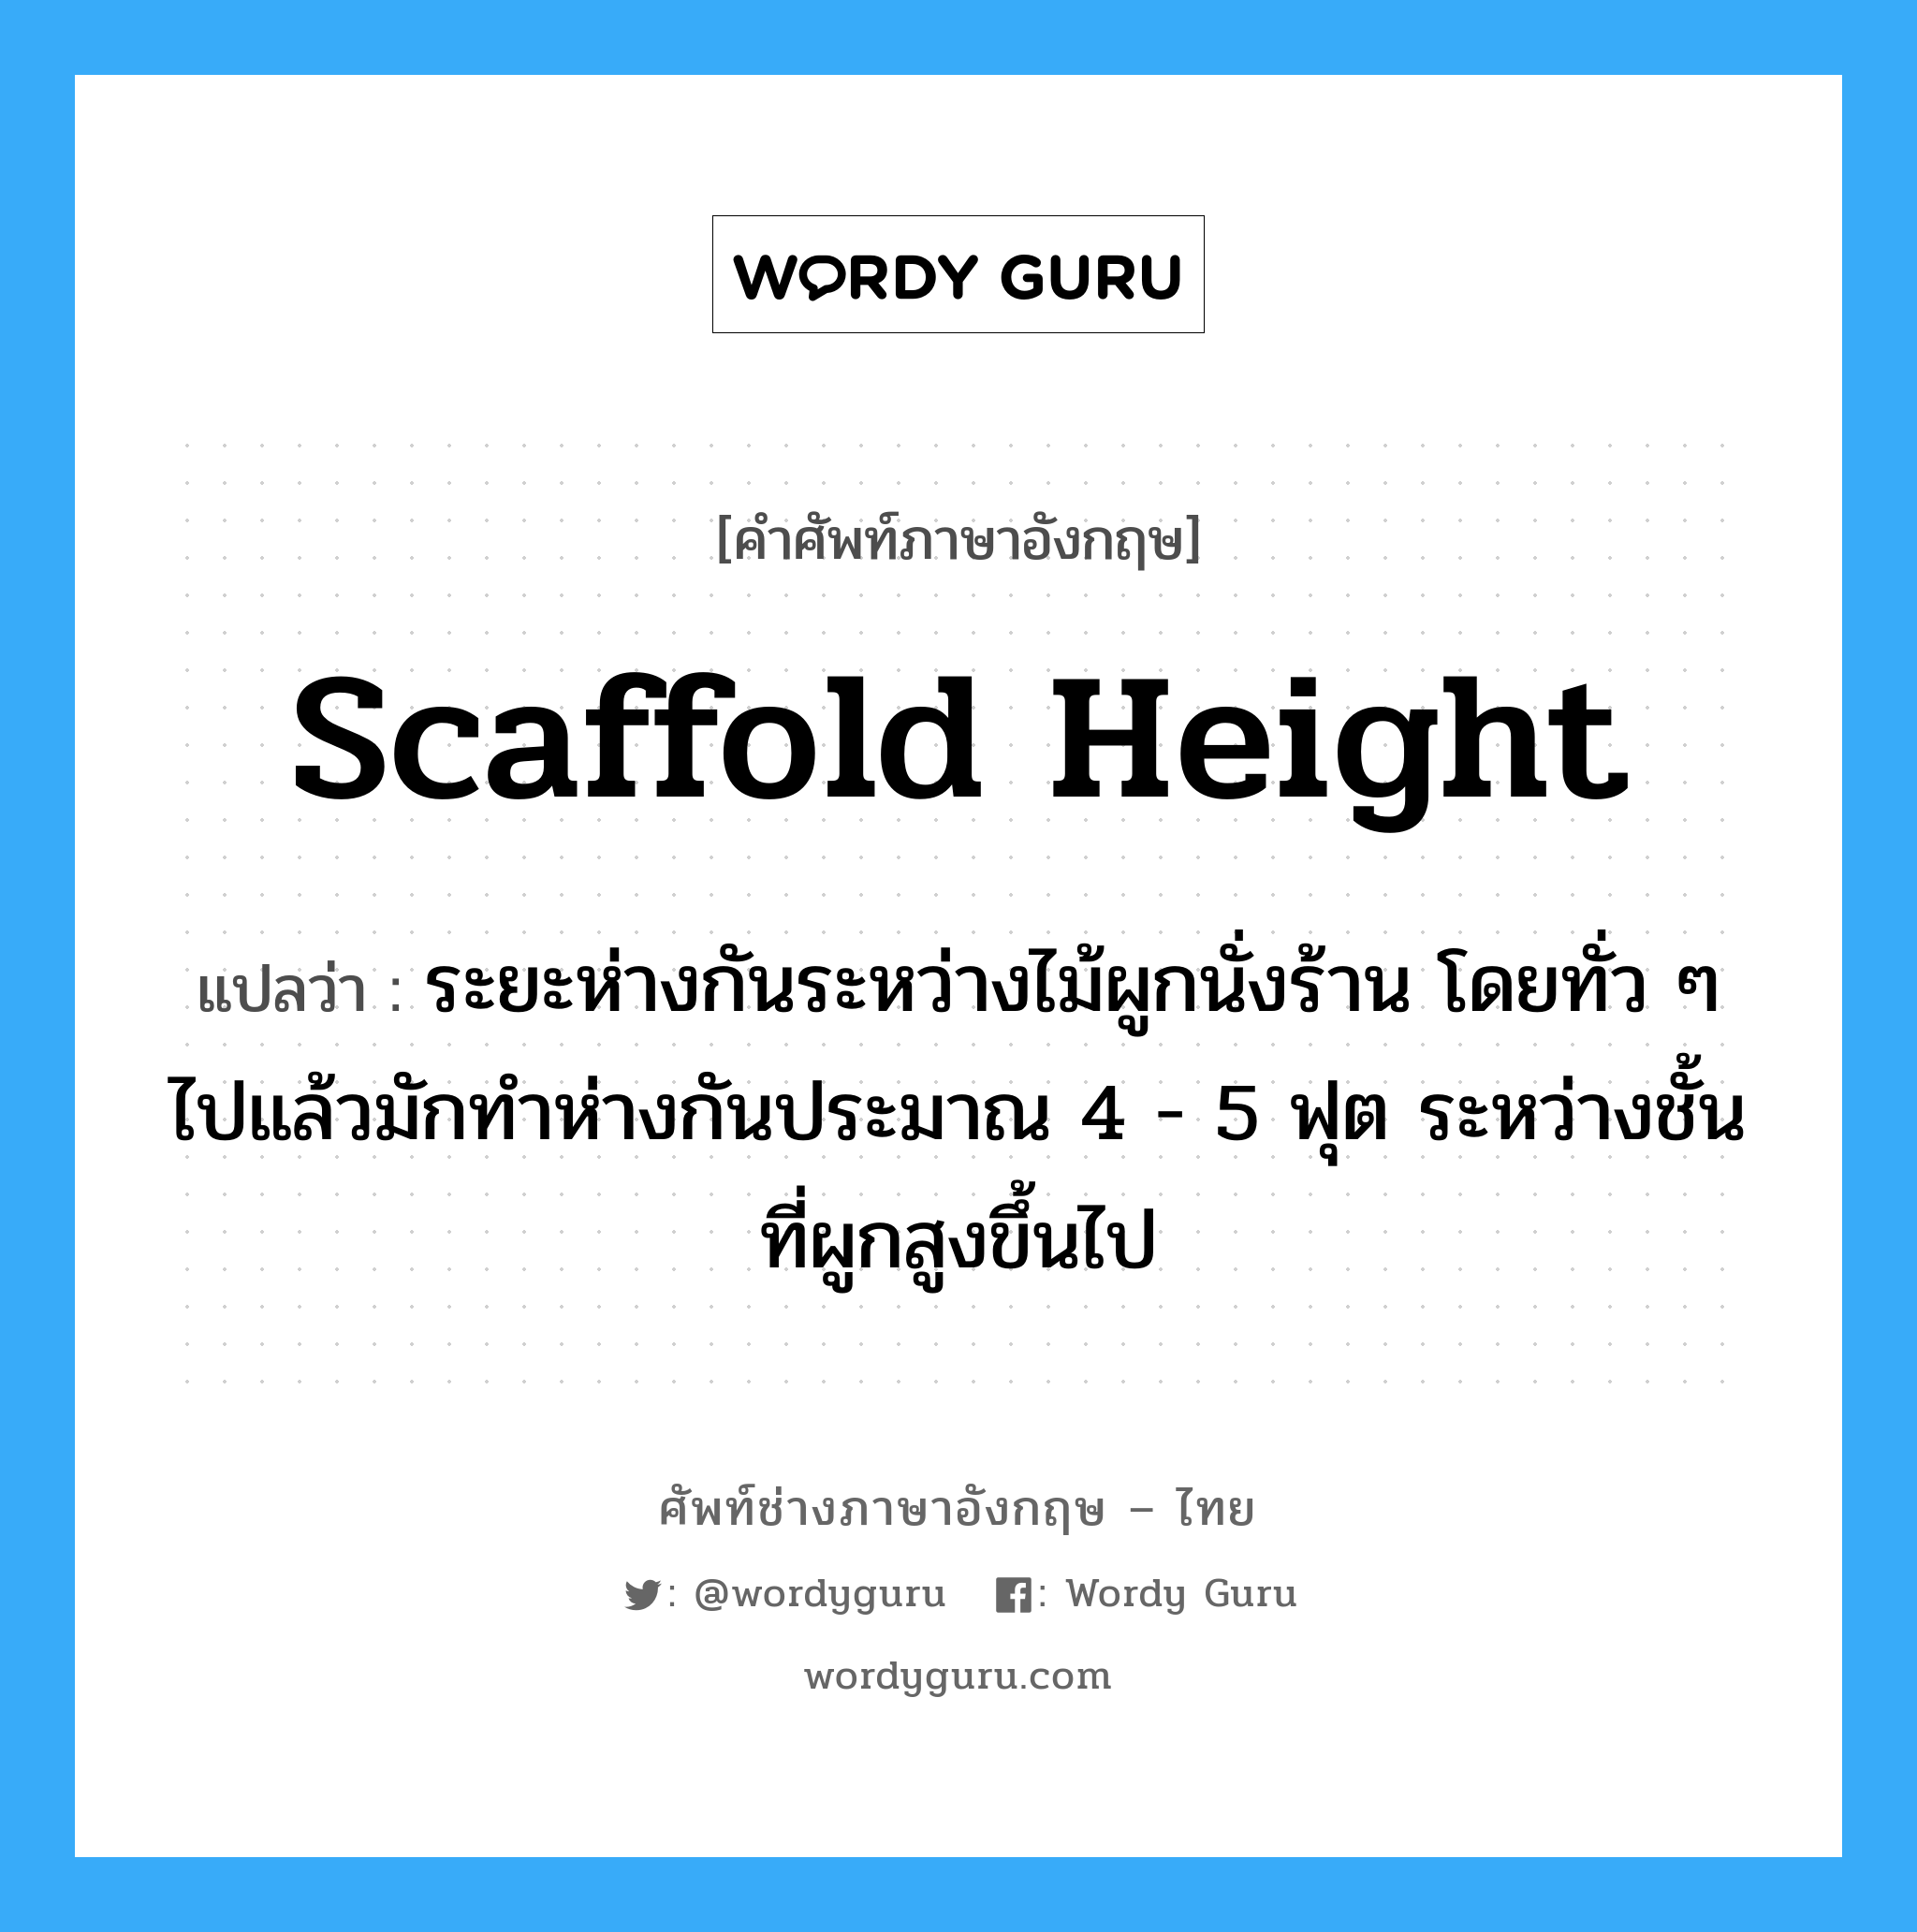 scaffold height แปลว่า?, คำศัพท์ช่างภาษาอังกฤษ - ไทย scaffold height คำศัพท์ภาษาอังกฤษ scaffold height แปลว่า ระยะห่างกันระหว่างไม้ผูกนั่งร้าน โดยทั่ว ๆ ไปแล้วมักทำห่างกันประมาณ 4 - 5 ฟุต ระหว่างชั้นที่ผูกสูงขึ้นไป